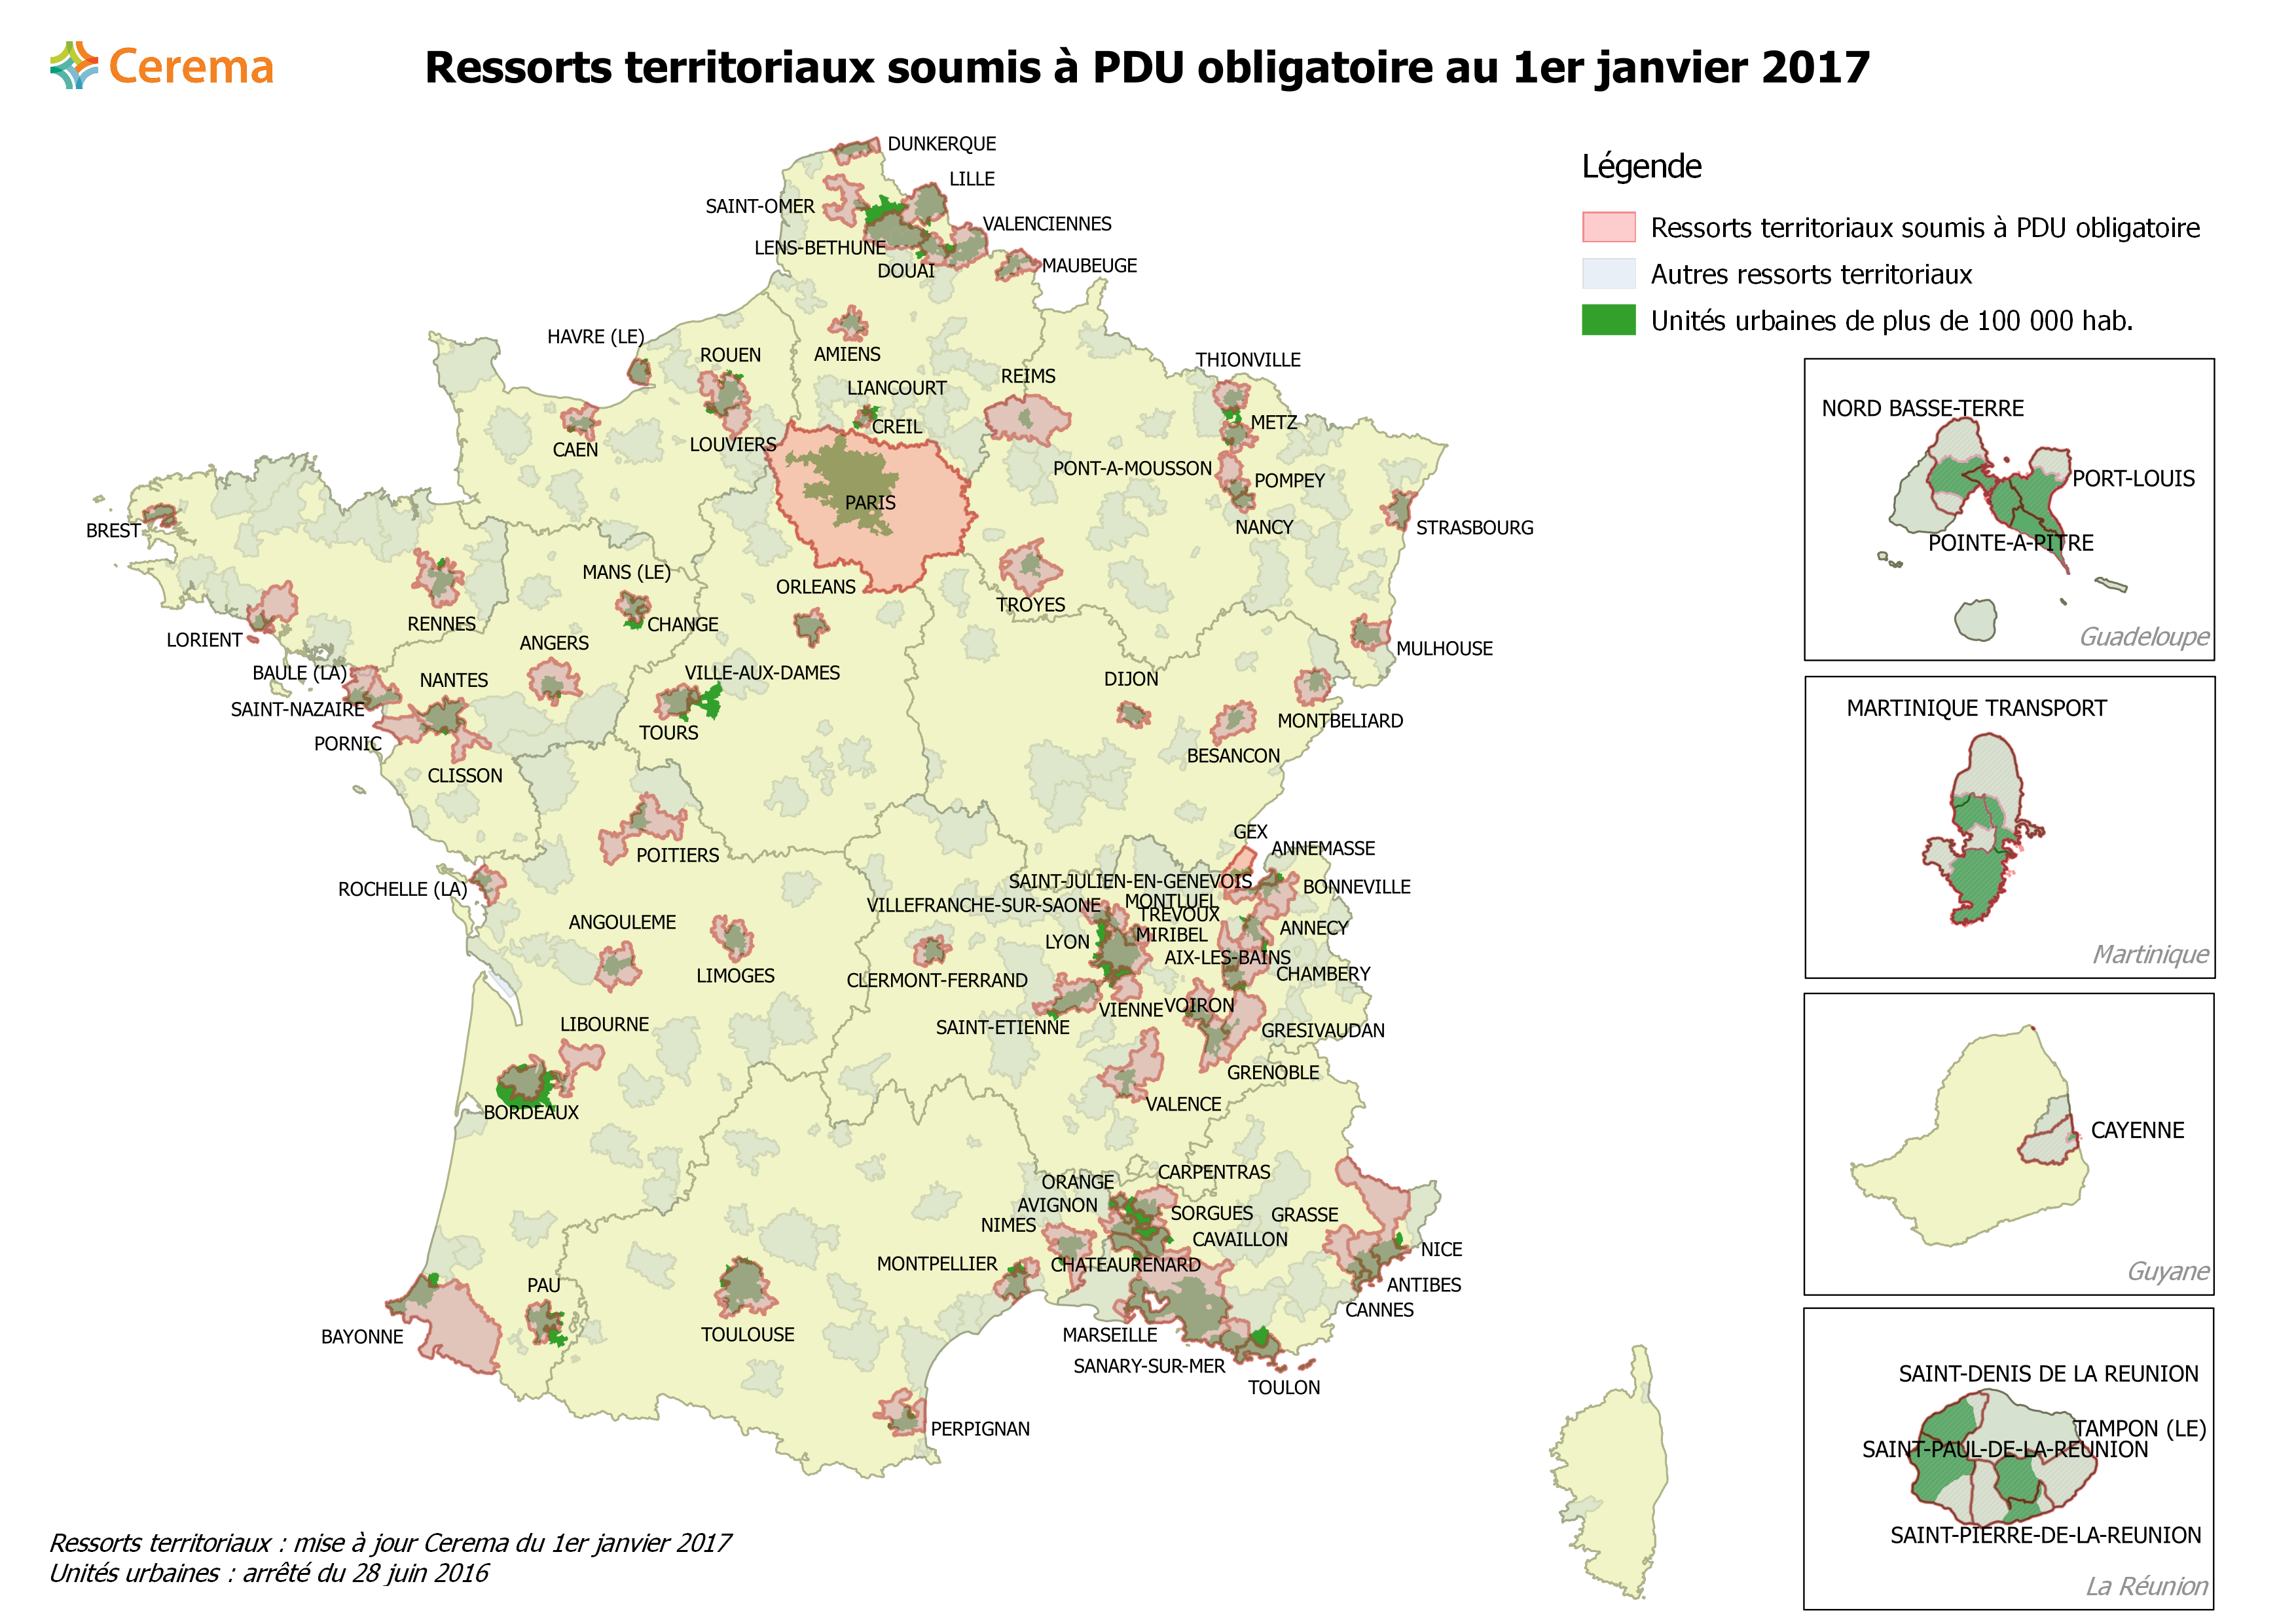 Les ressorts territoriaux soumis à PDU obligatoire au 1er janvier 2017